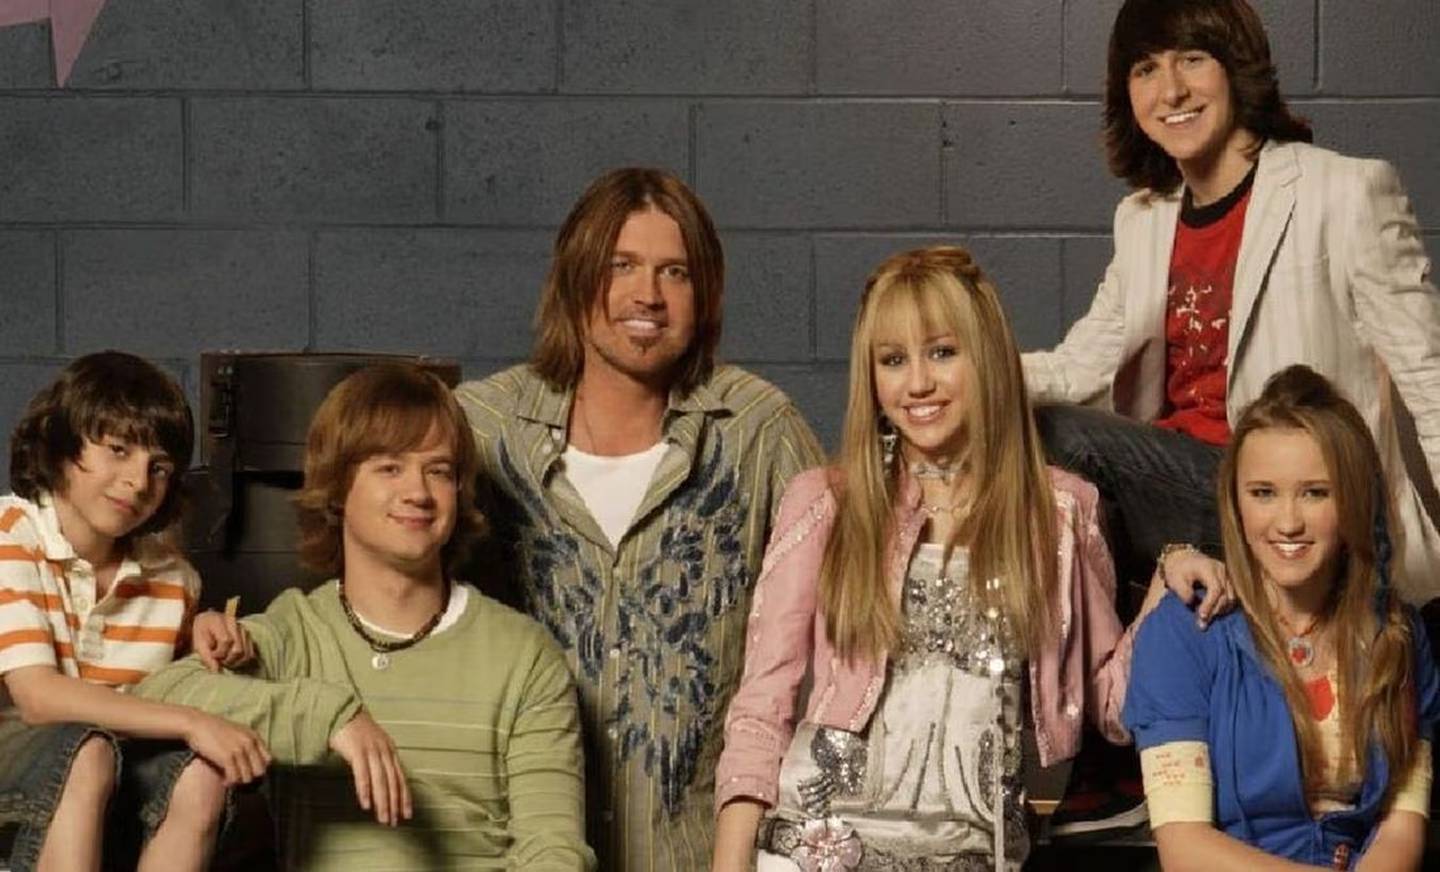 Hannah Montana, elenco de la popular serie. Mitchel Musso interpretaba a Oliver Oken, amigo de Miley